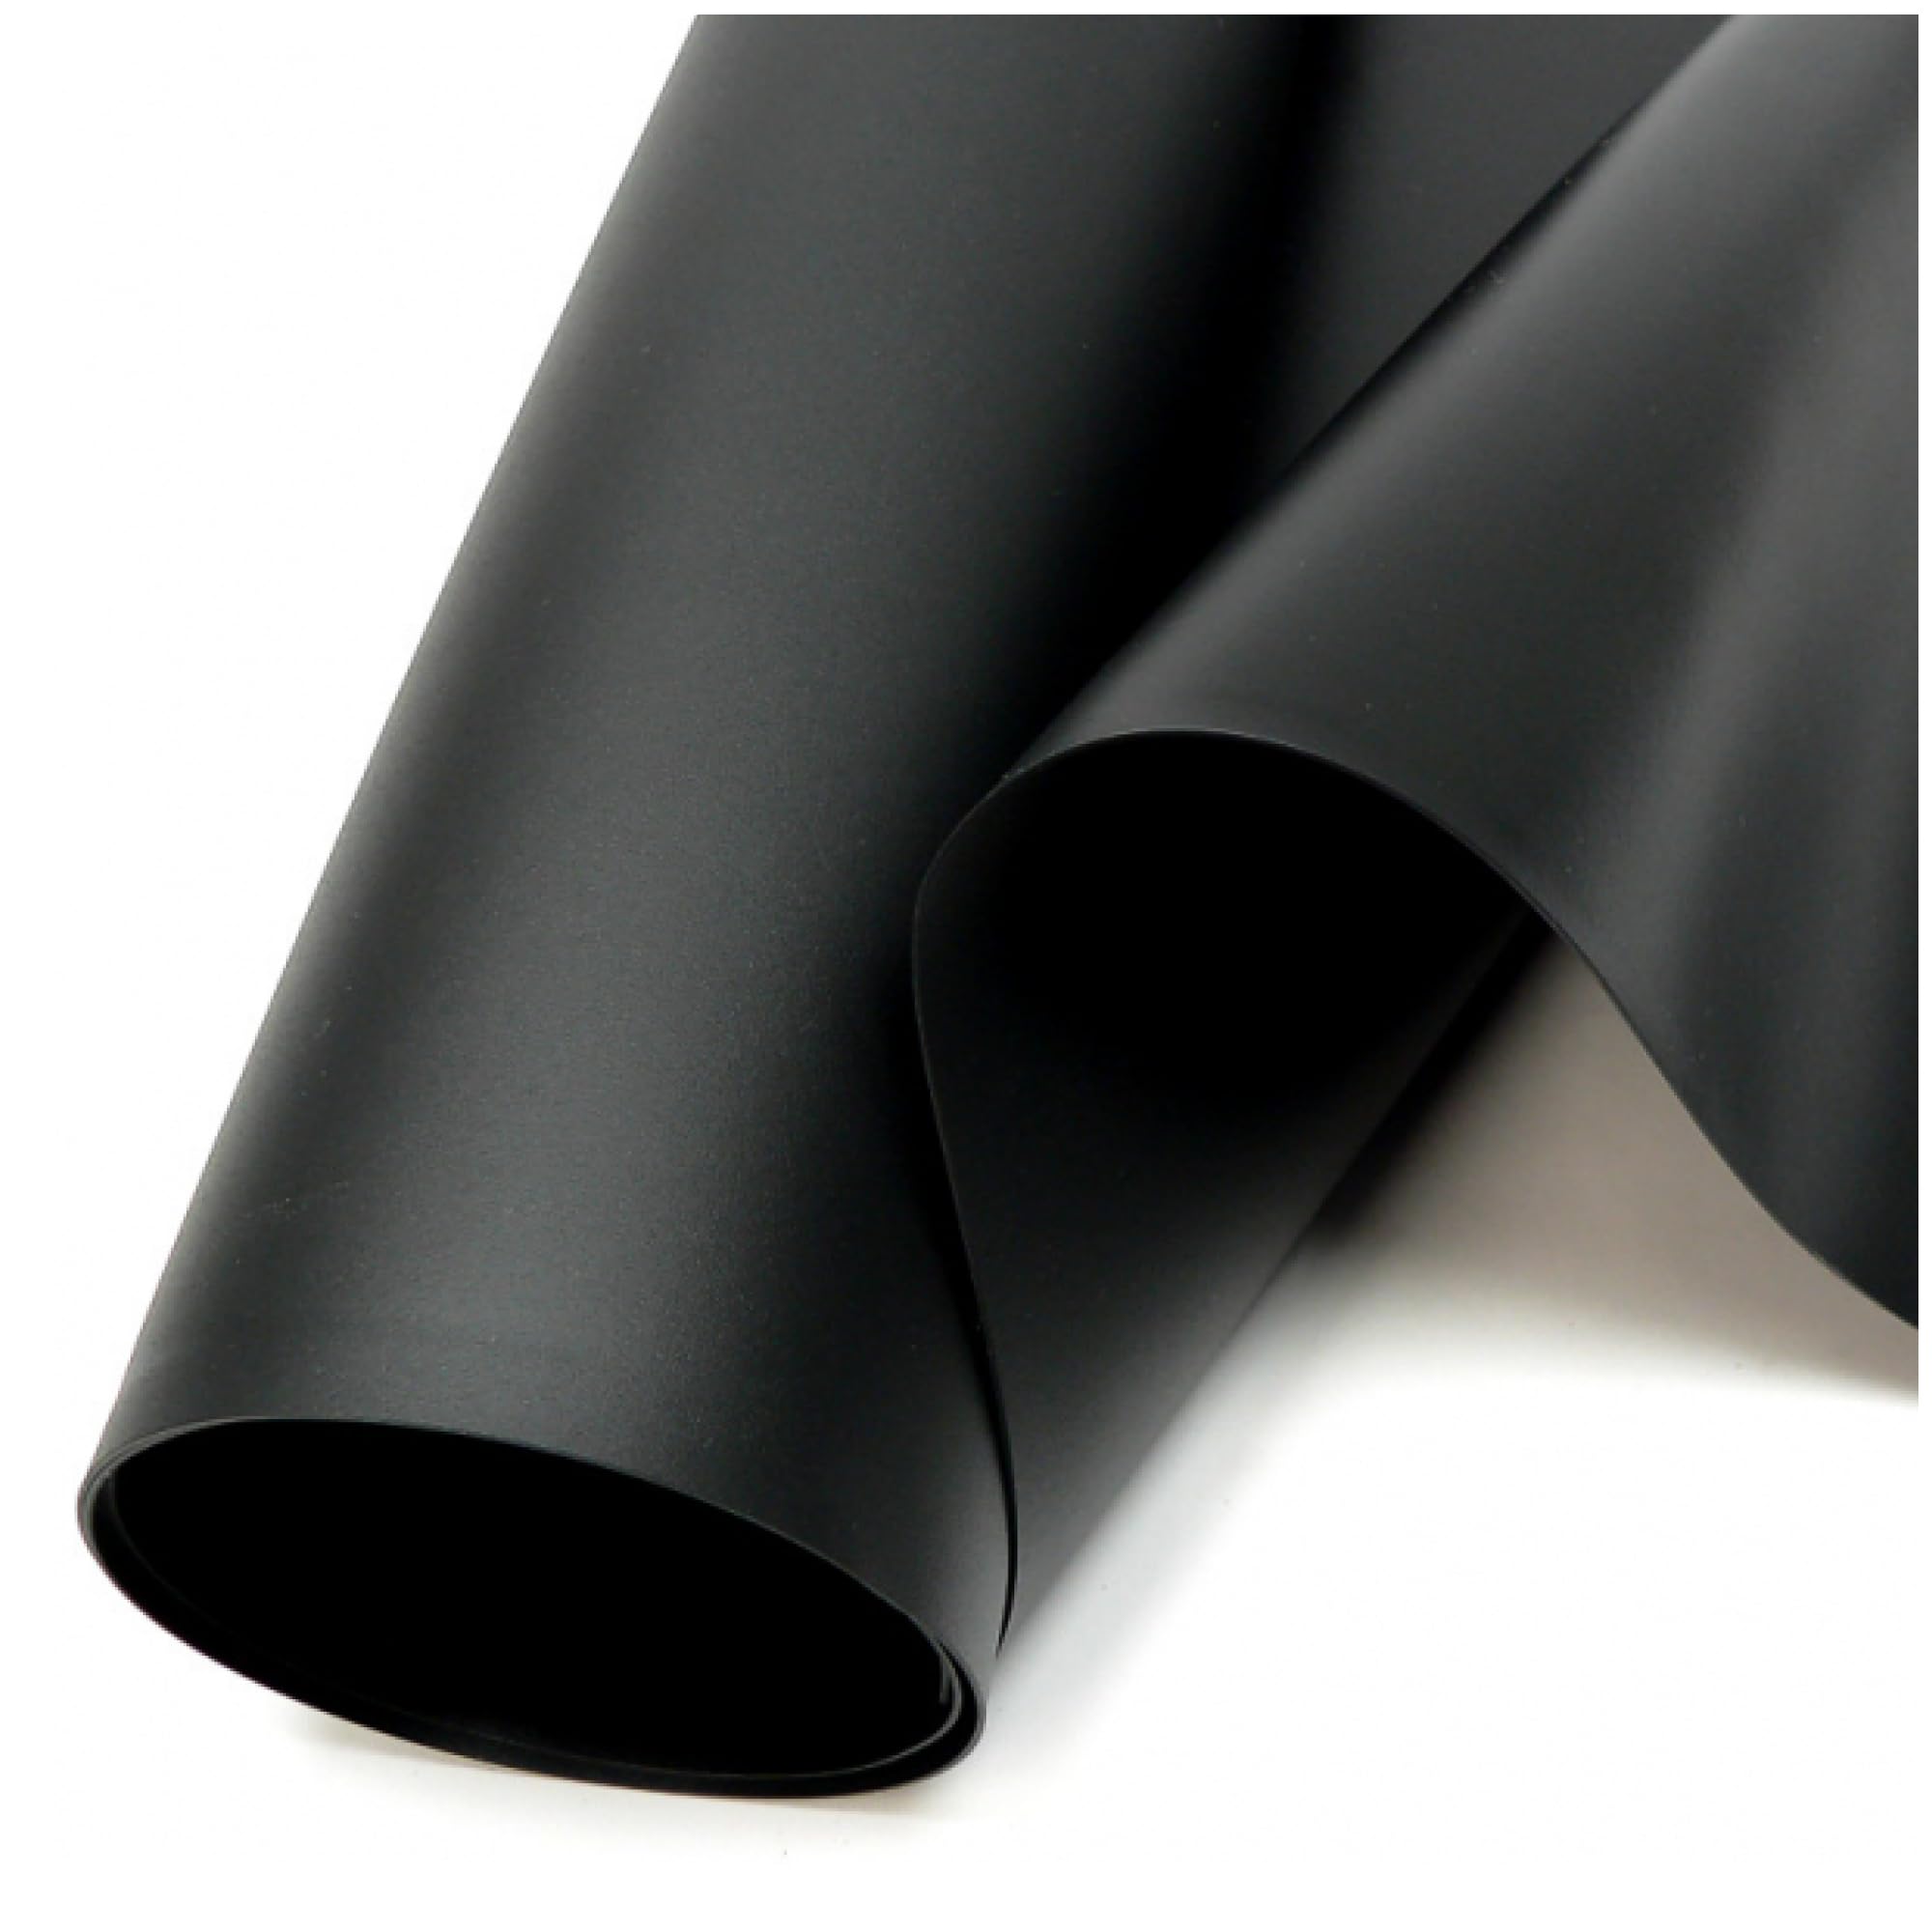 SIKA Premium PVC Teichfolie schwarz (PVC Stärke 1,0 mm, 8 m x 7 m) - Verschiedene Stärken & Größen/PVC Folie schwarz auch geeignet als Hochbeet Folie wasserdicht